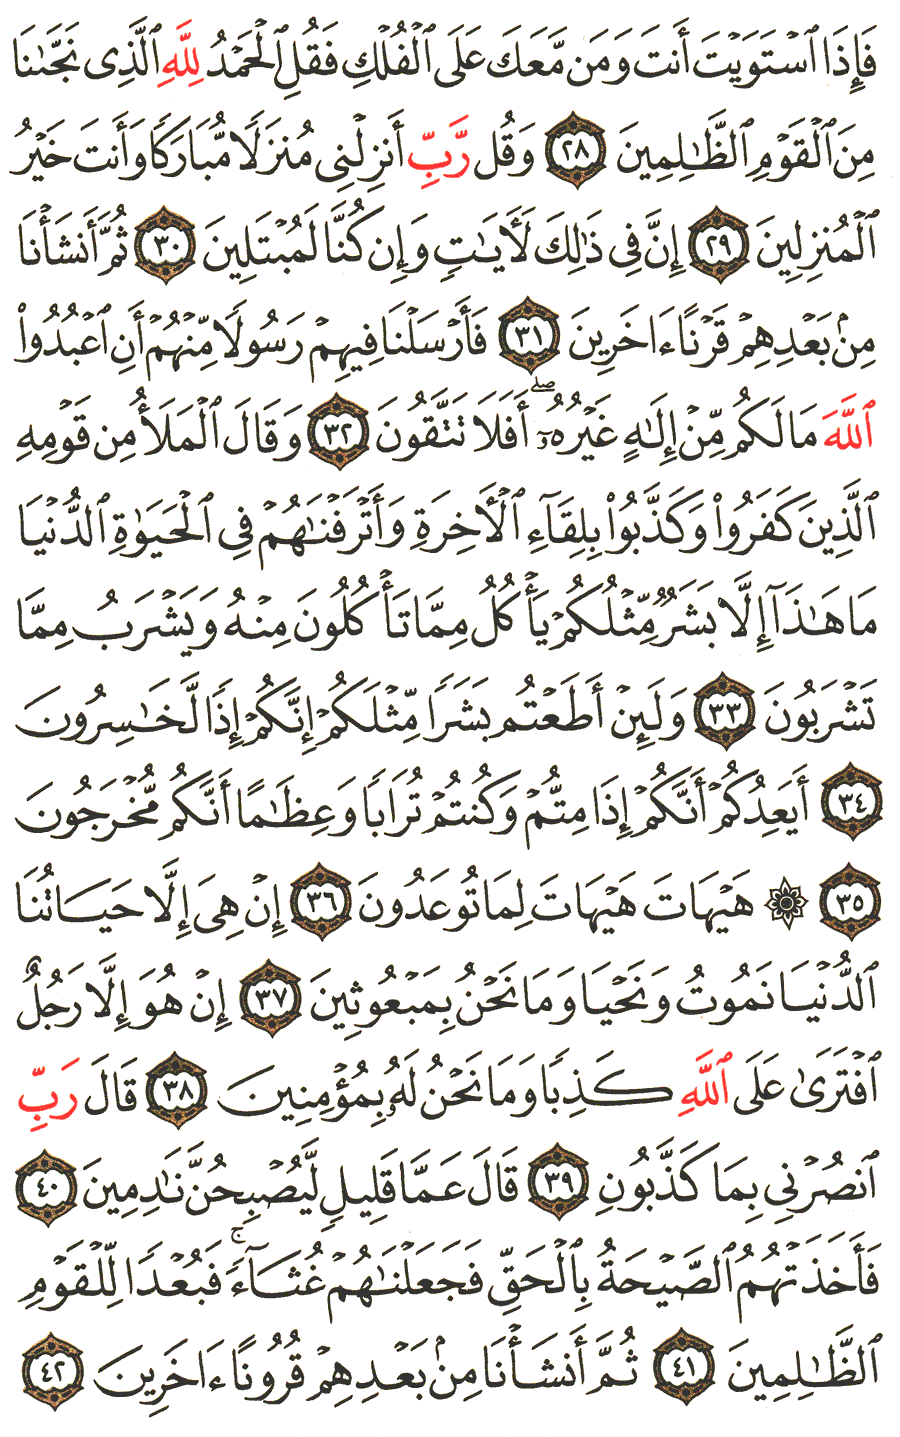 الصفحة رقم 344  من القرآن الكريم مكتوبة من المصحف